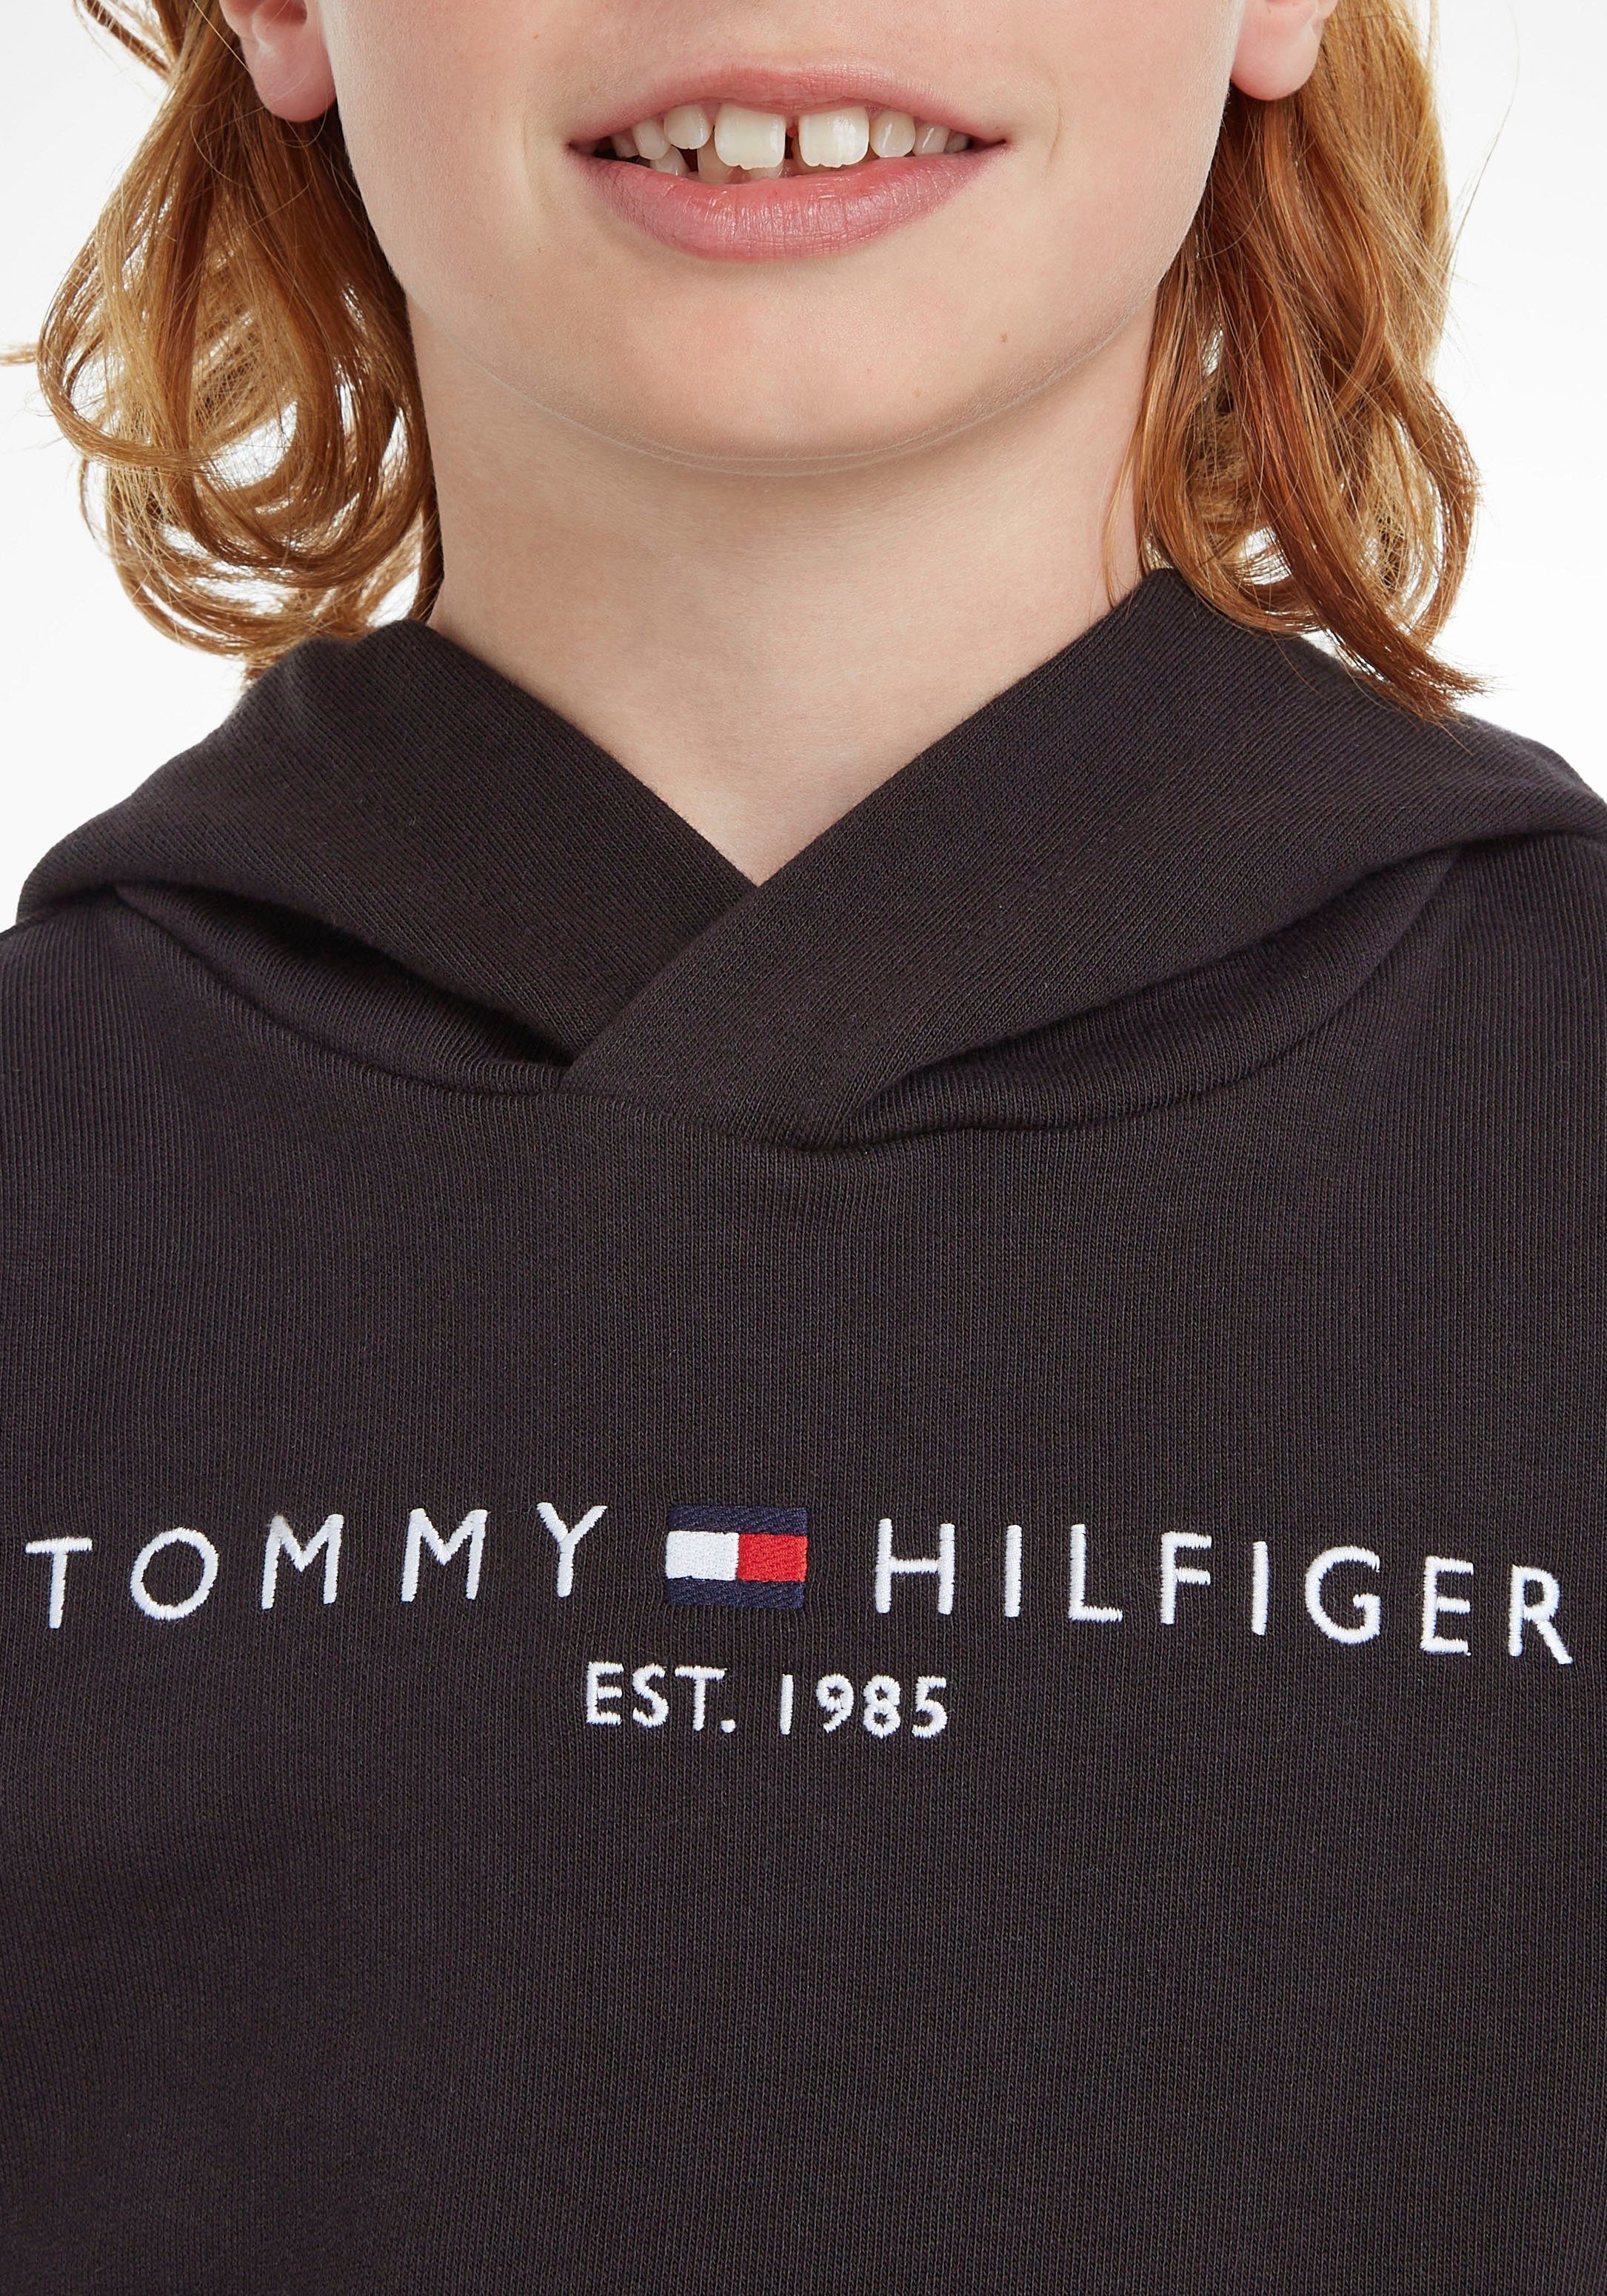 Tommy Hilfiger Kapuzensweatshirt ESSENTIAL HOODIE Mädchen Junior und Kinder Jungen Kids MiniMe,für